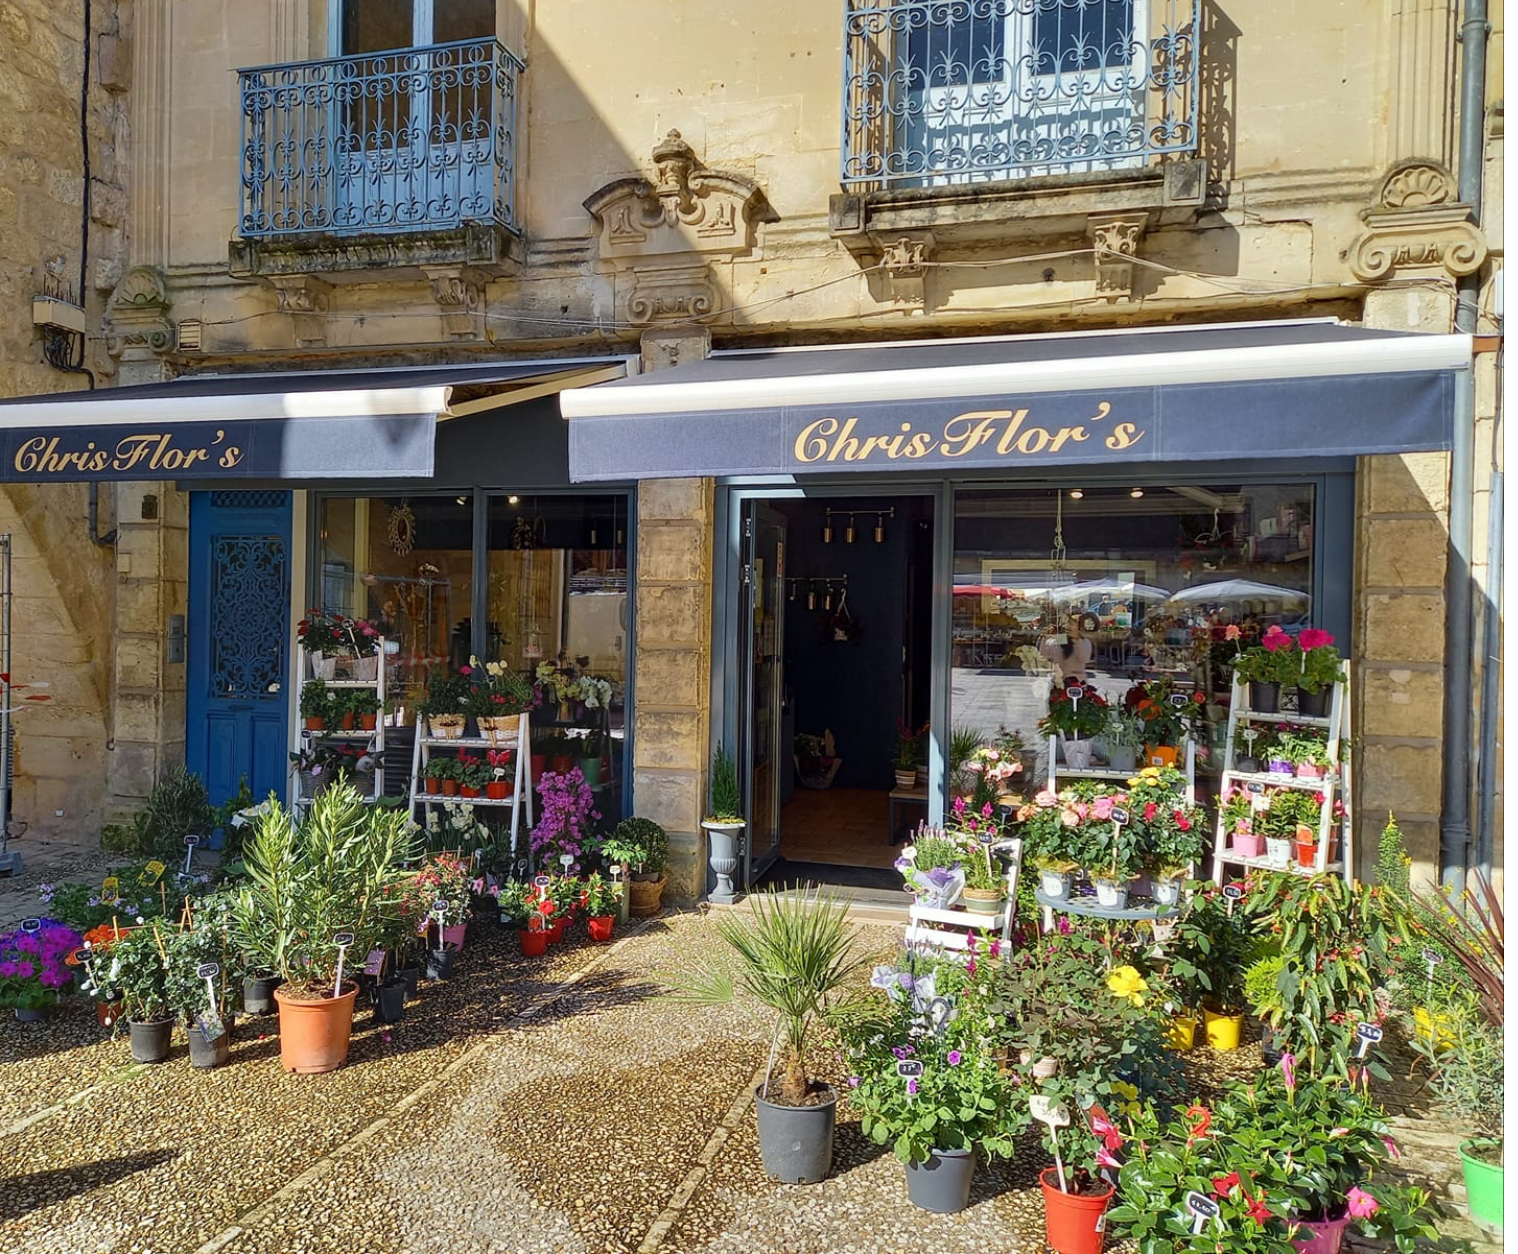 Belle boutique de fleurs dans village touristique de Dordogne, avec divers commerces, école, collège, maison de retraite… 36 m2 en intérieur et possibilité de mettre des plantes dehors. Le magasin est climatisé. Pas de salarié.